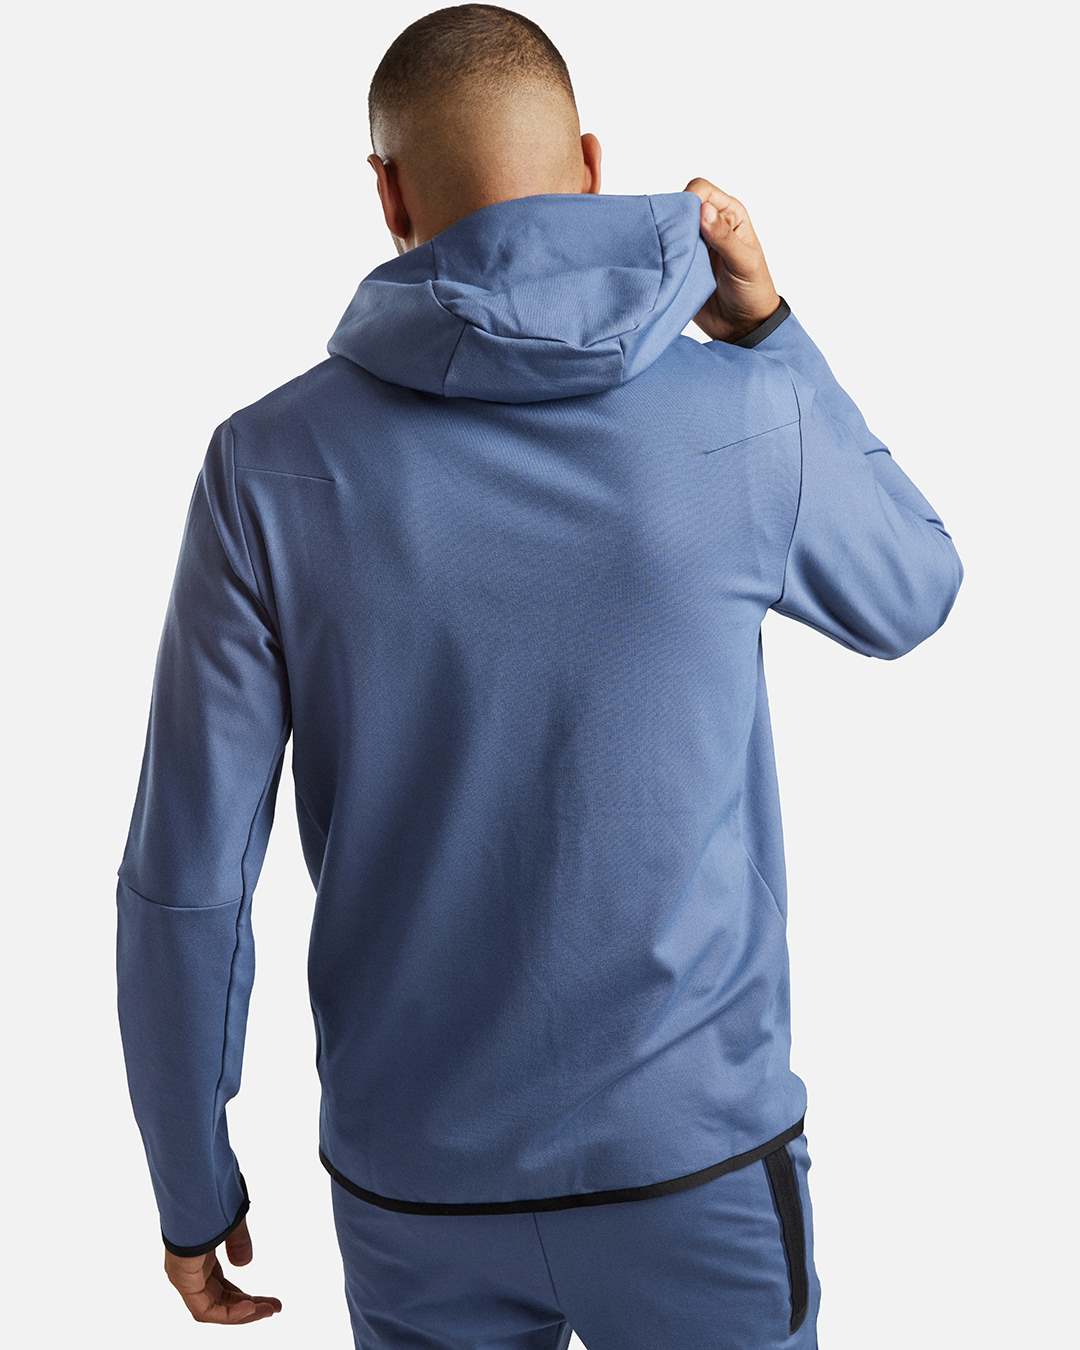 Nike Tech Fleece Lightweight Hooded Jacket - Blue/Black